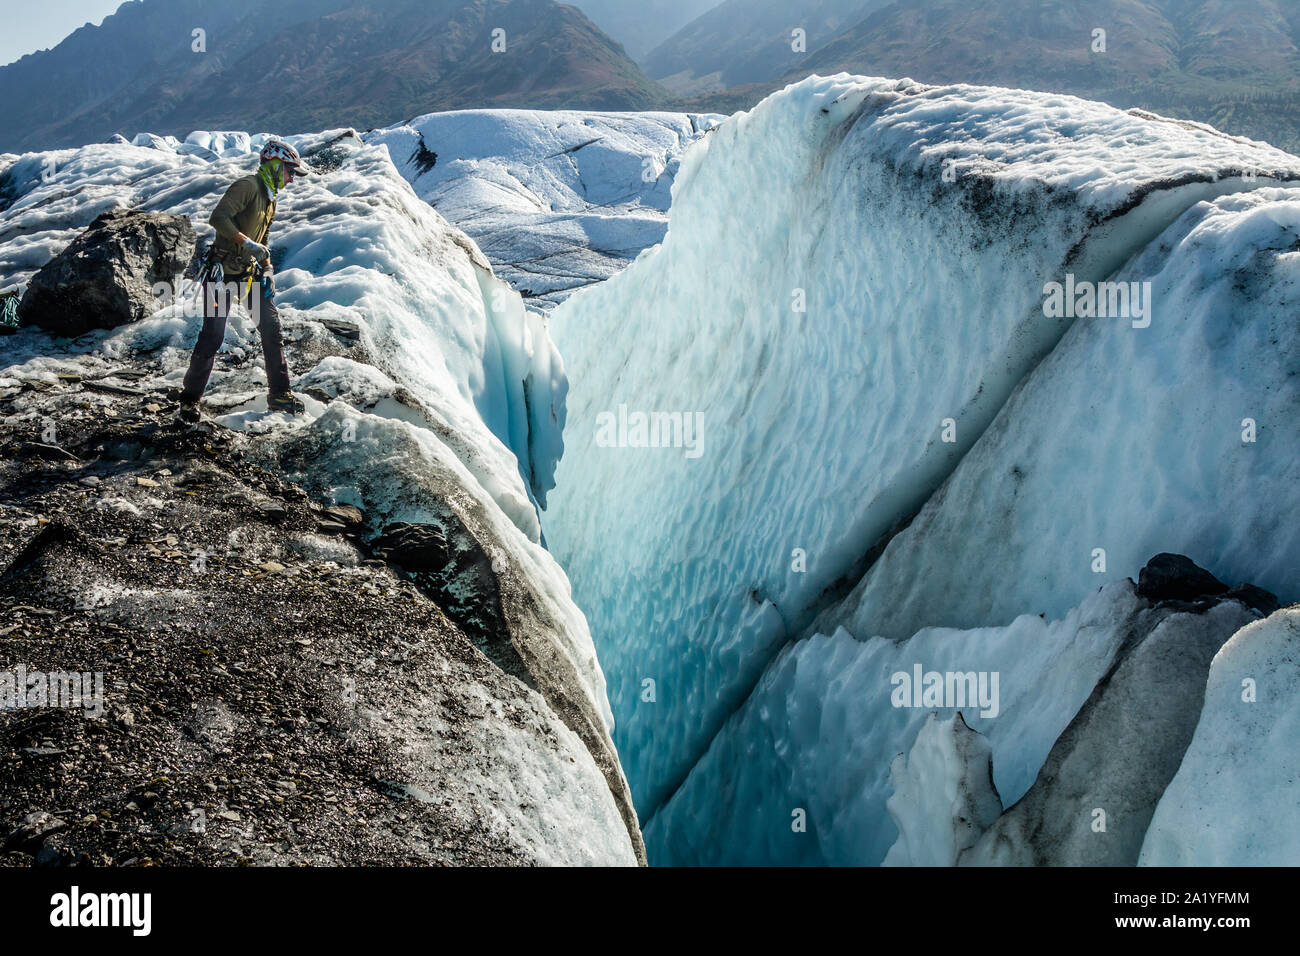 Ice climber, schiefen Blicken in eine massive Gletscherspalte, suchen einen Ort, an einem Seil zu senken und in die Gletscherspalte. Stockfoto